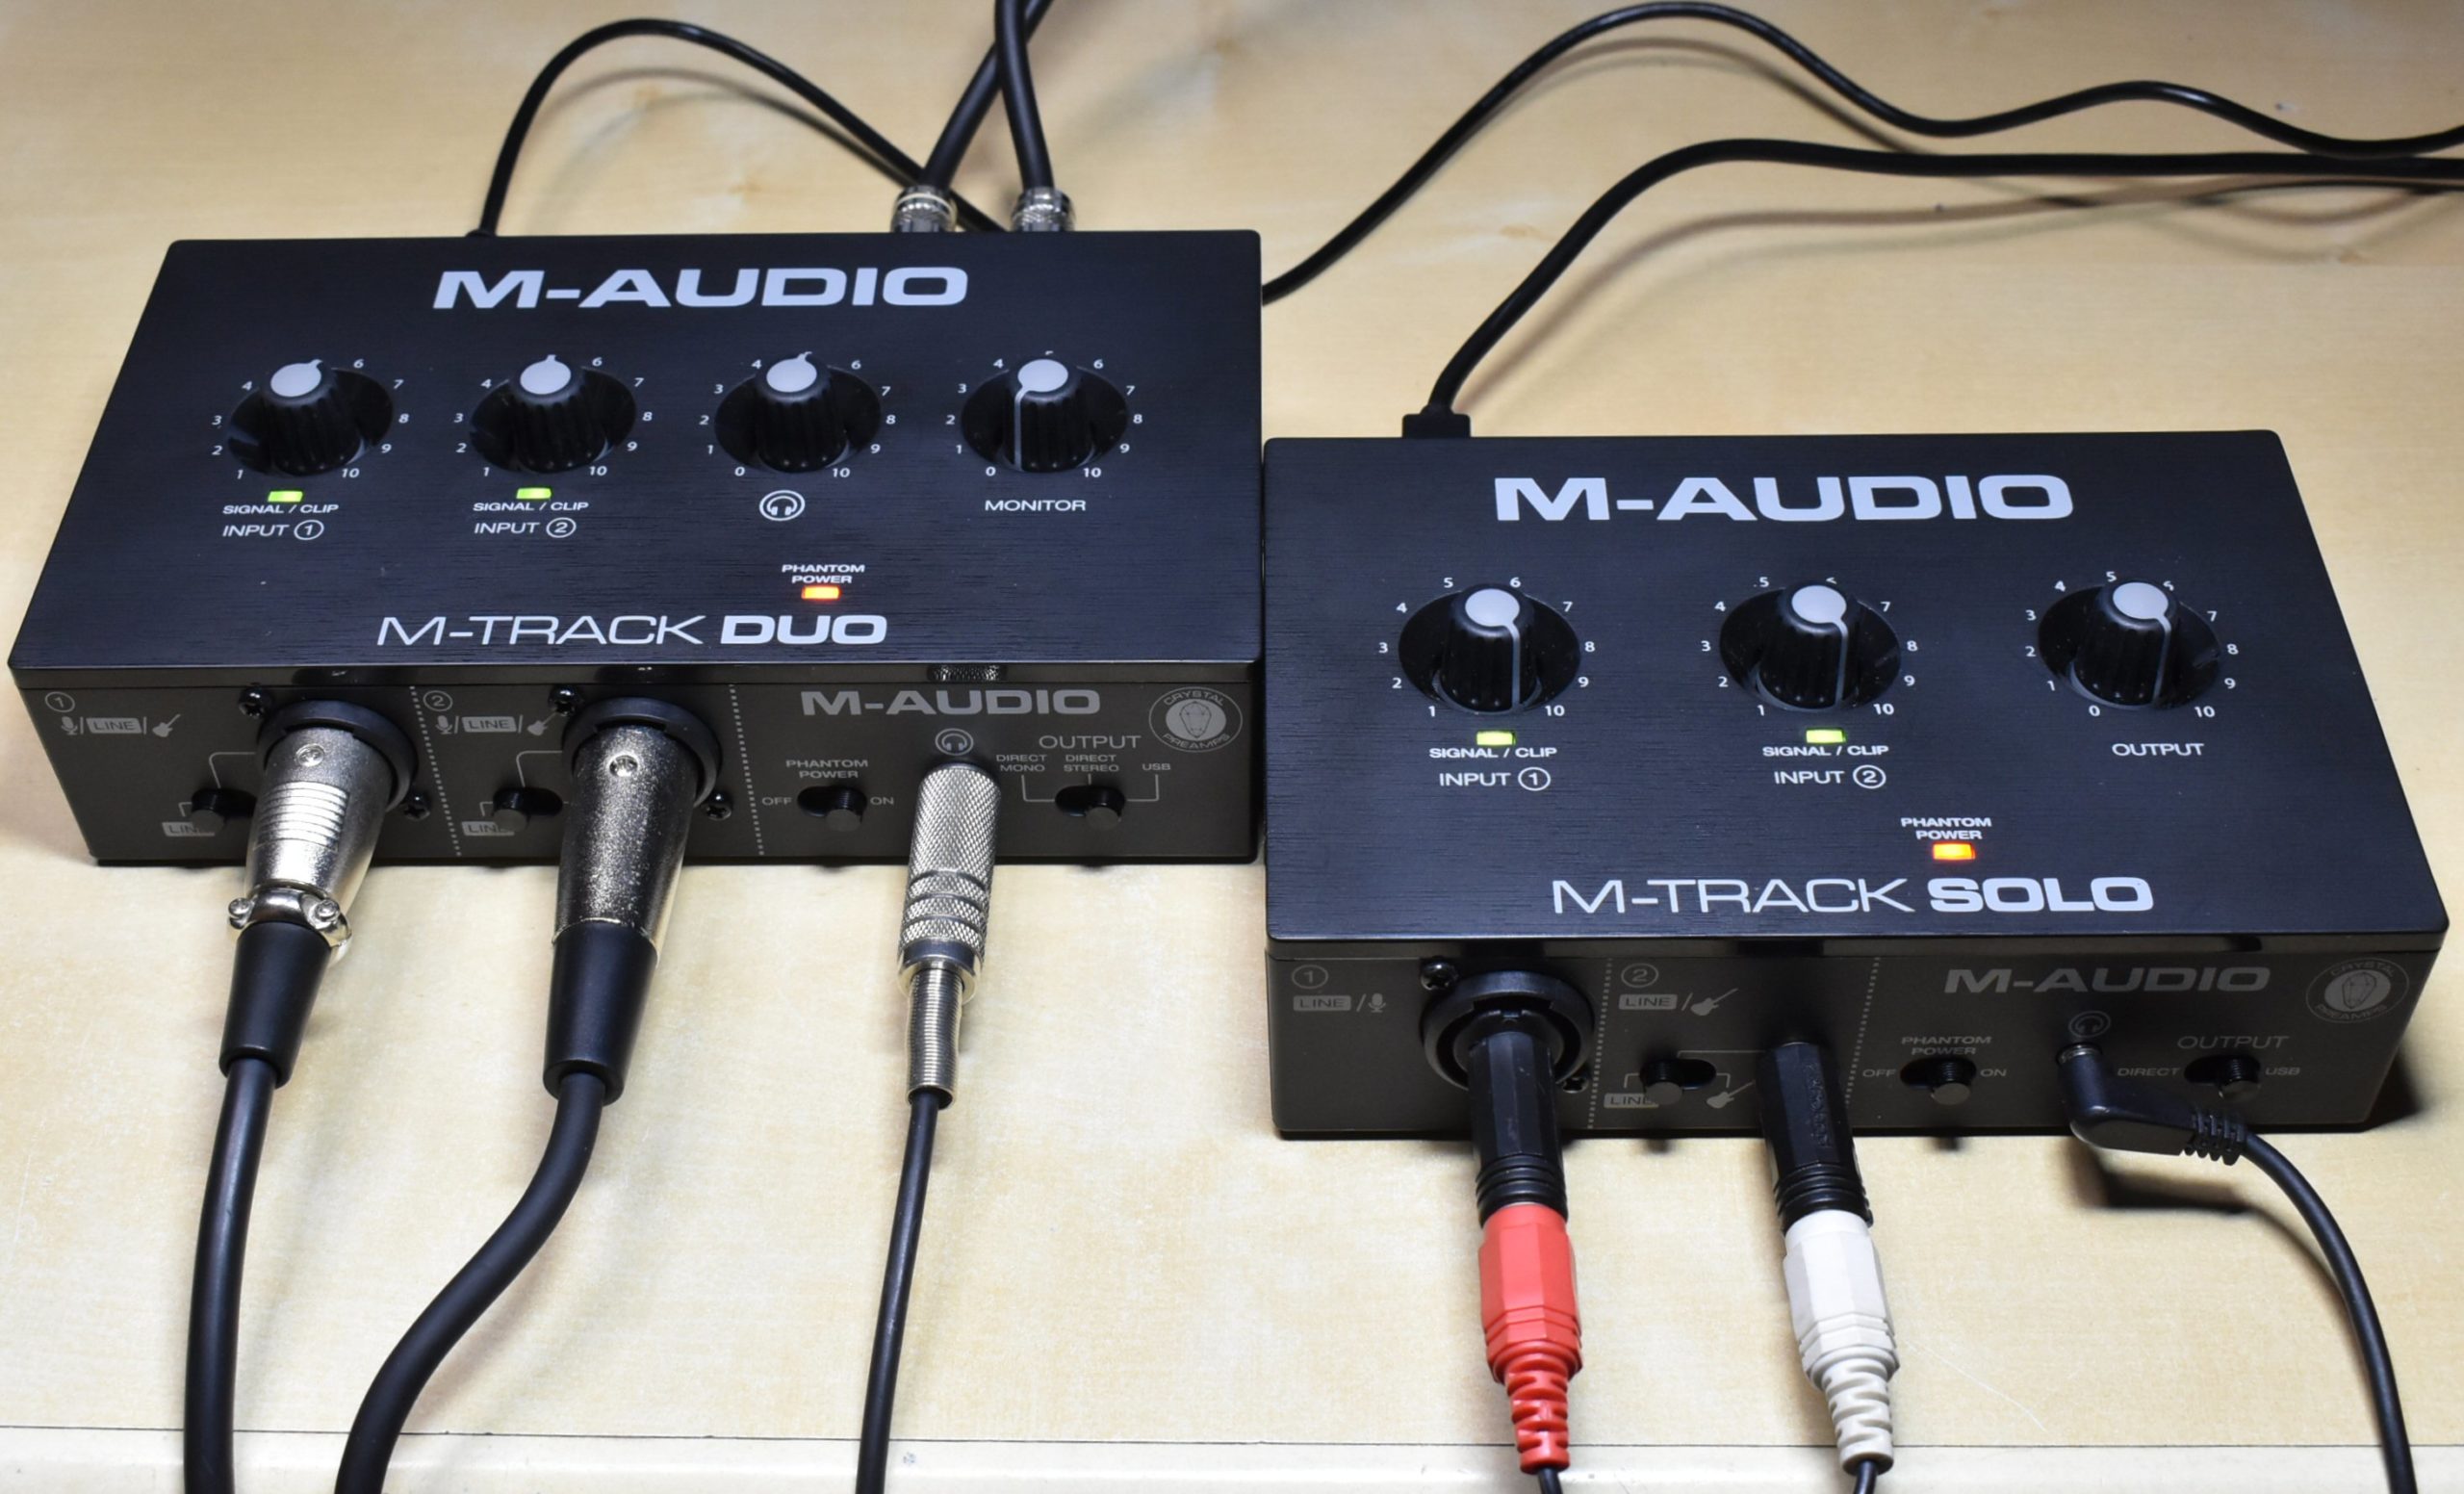 M-Audioの激安オーディオインターフェイス、5,000円のM-Track Solo